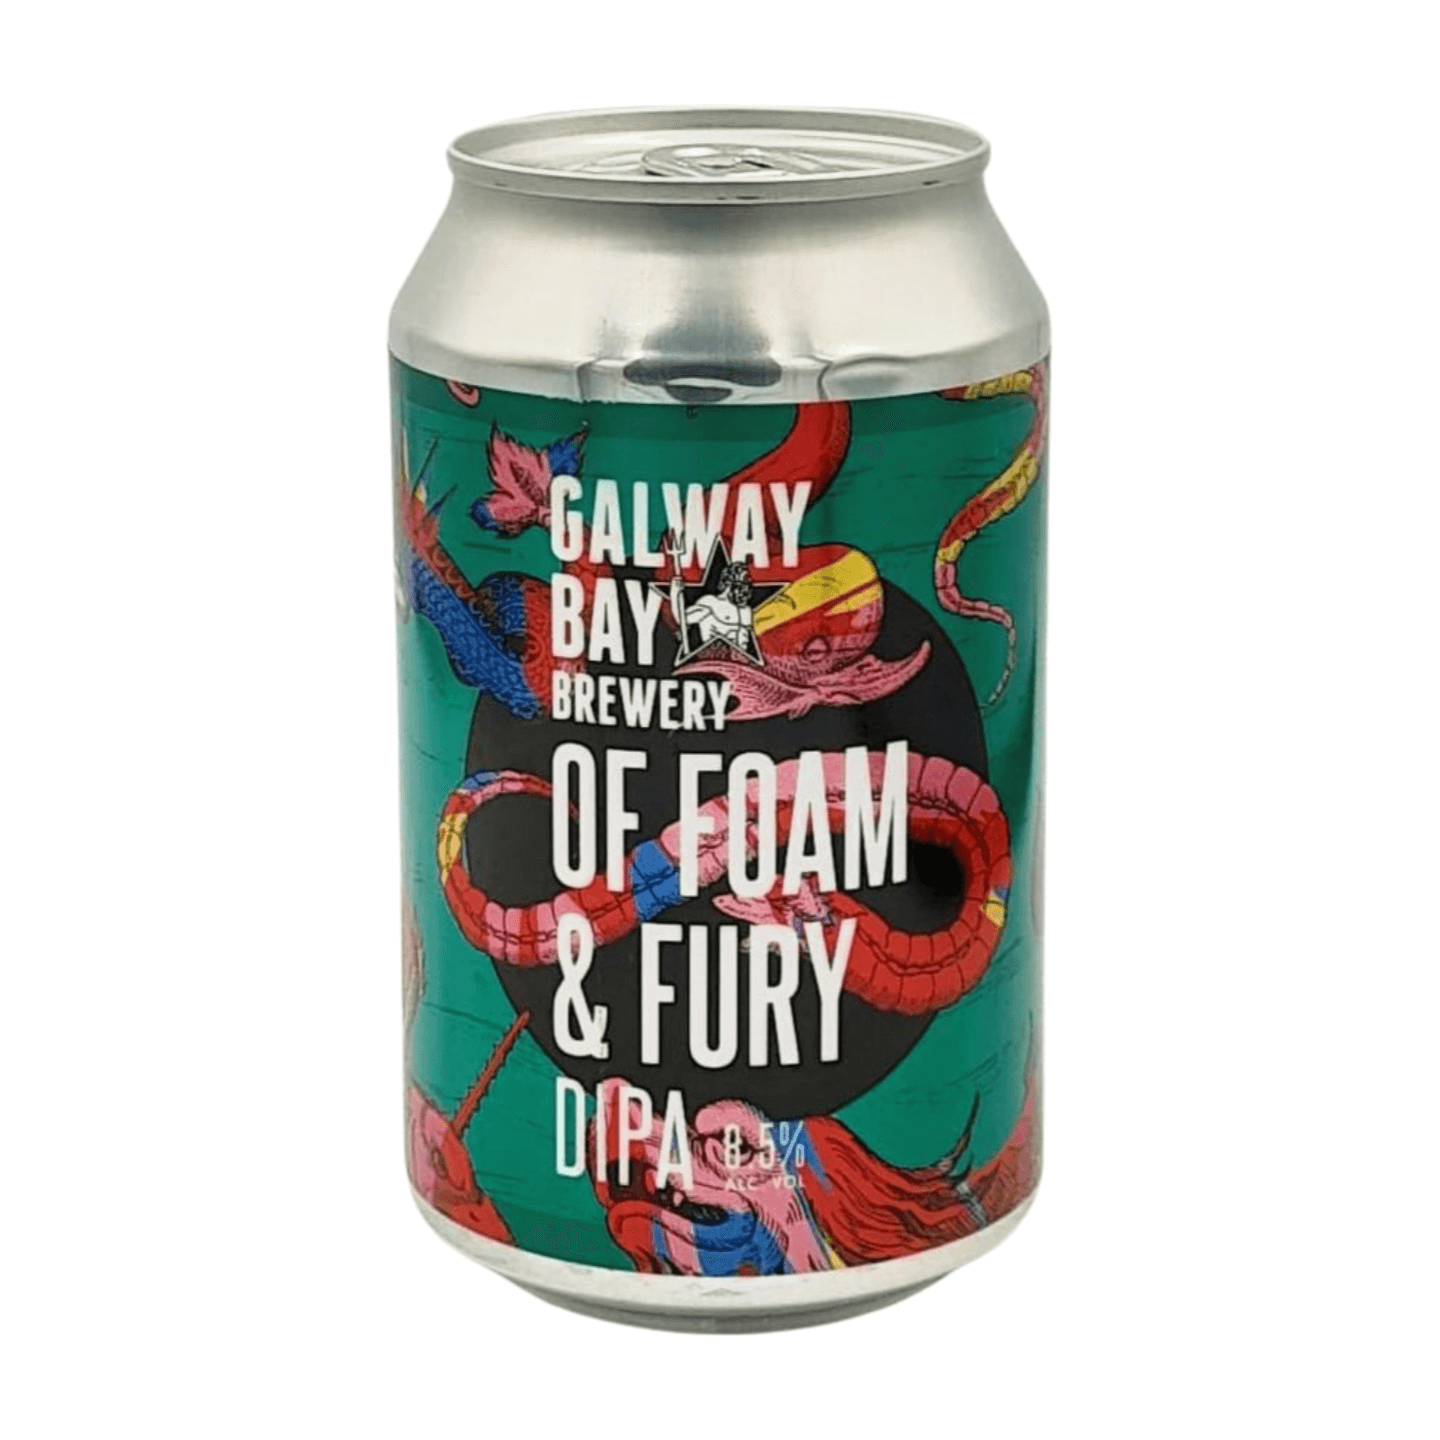 Galway Bay Brewery Of Foam And Fury | DIPA Webshop Online Verdins Bierwinkel Rotterdam